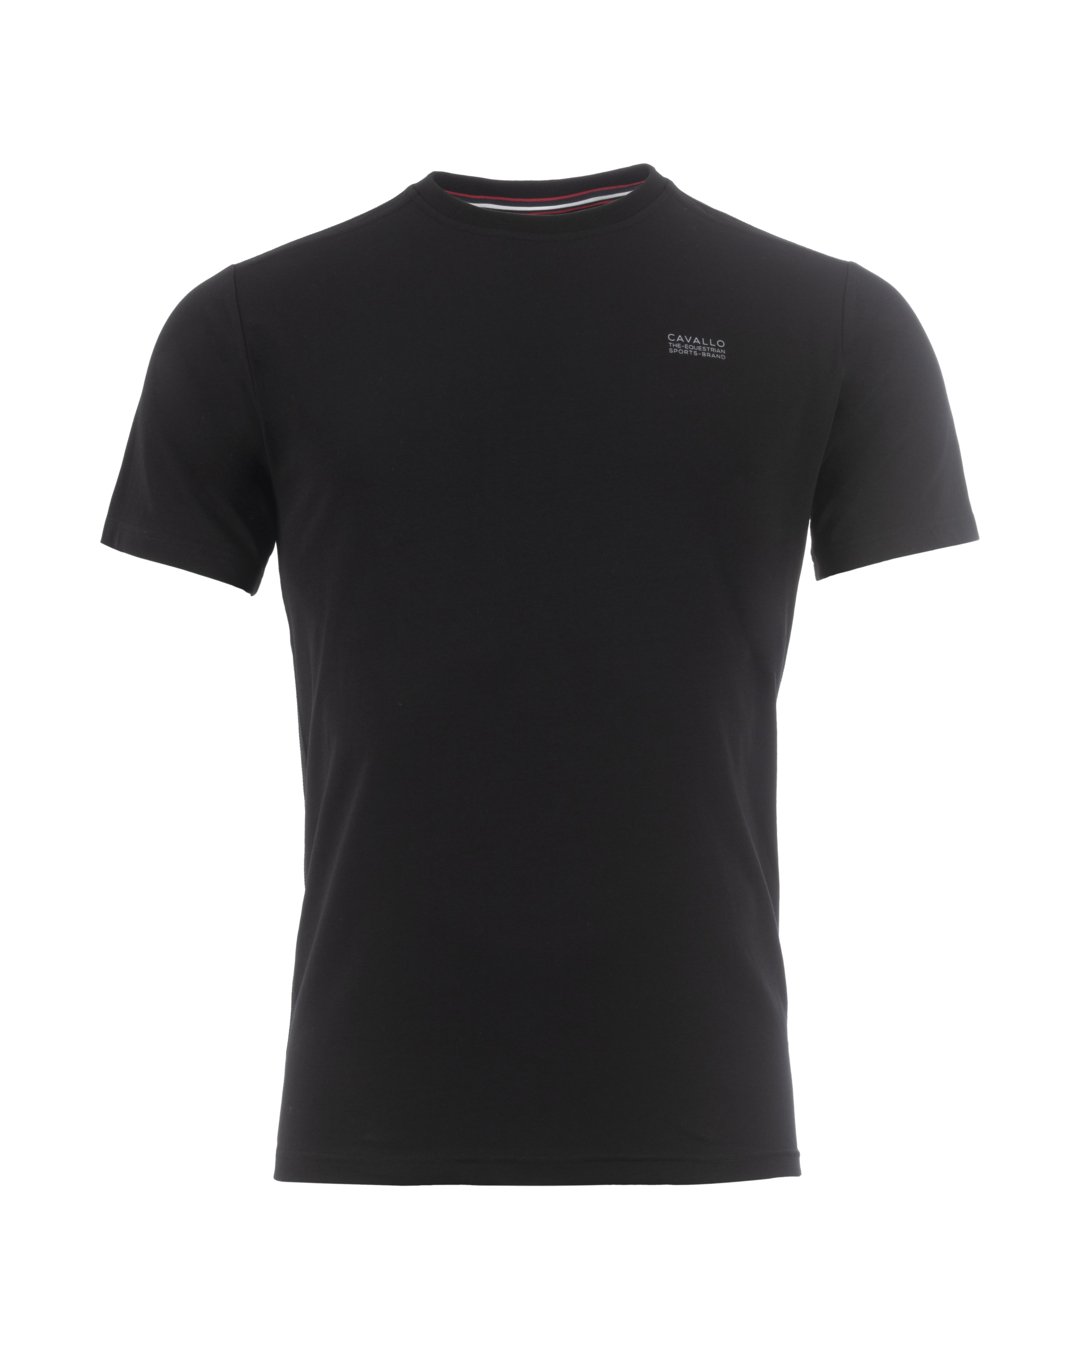 T-Shirt CavalCotton R-Neck Schwarz 34